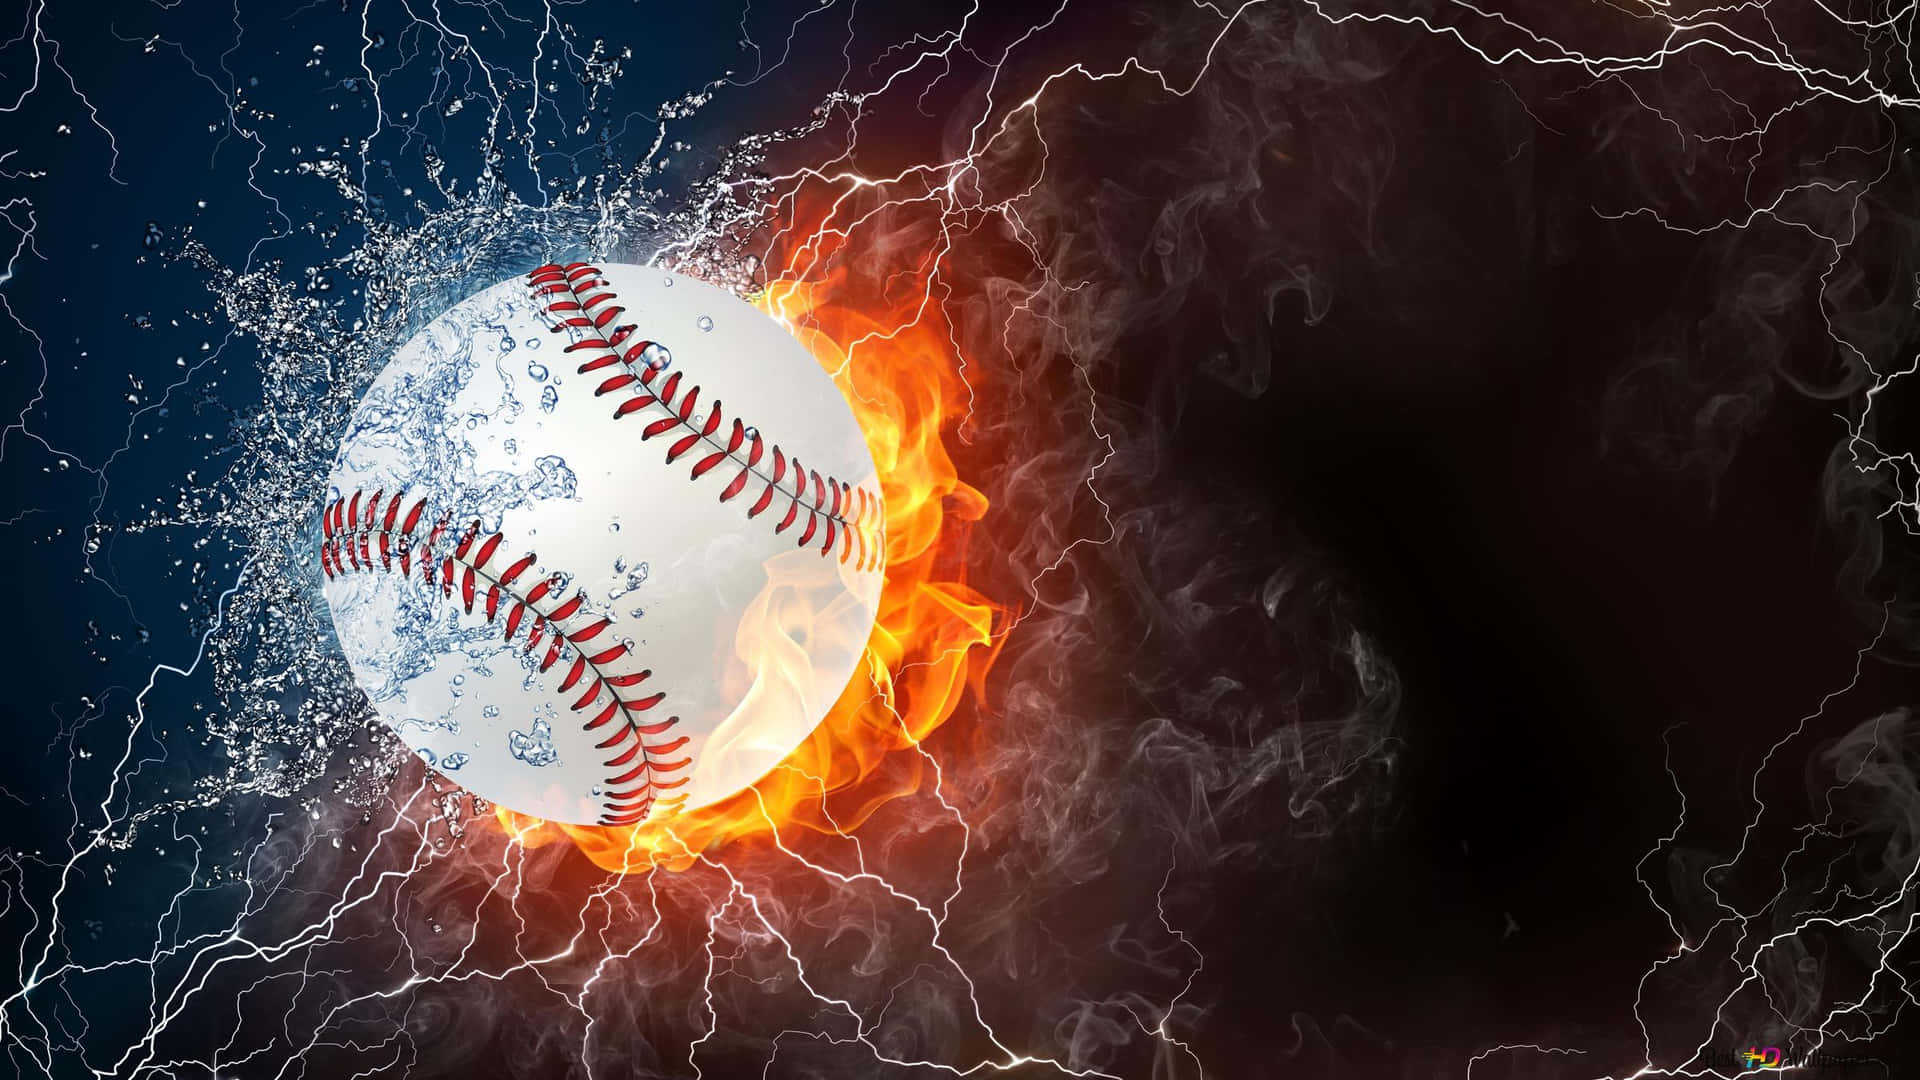 Baseball Senior picture. #baseball #SeniorPicture #fire